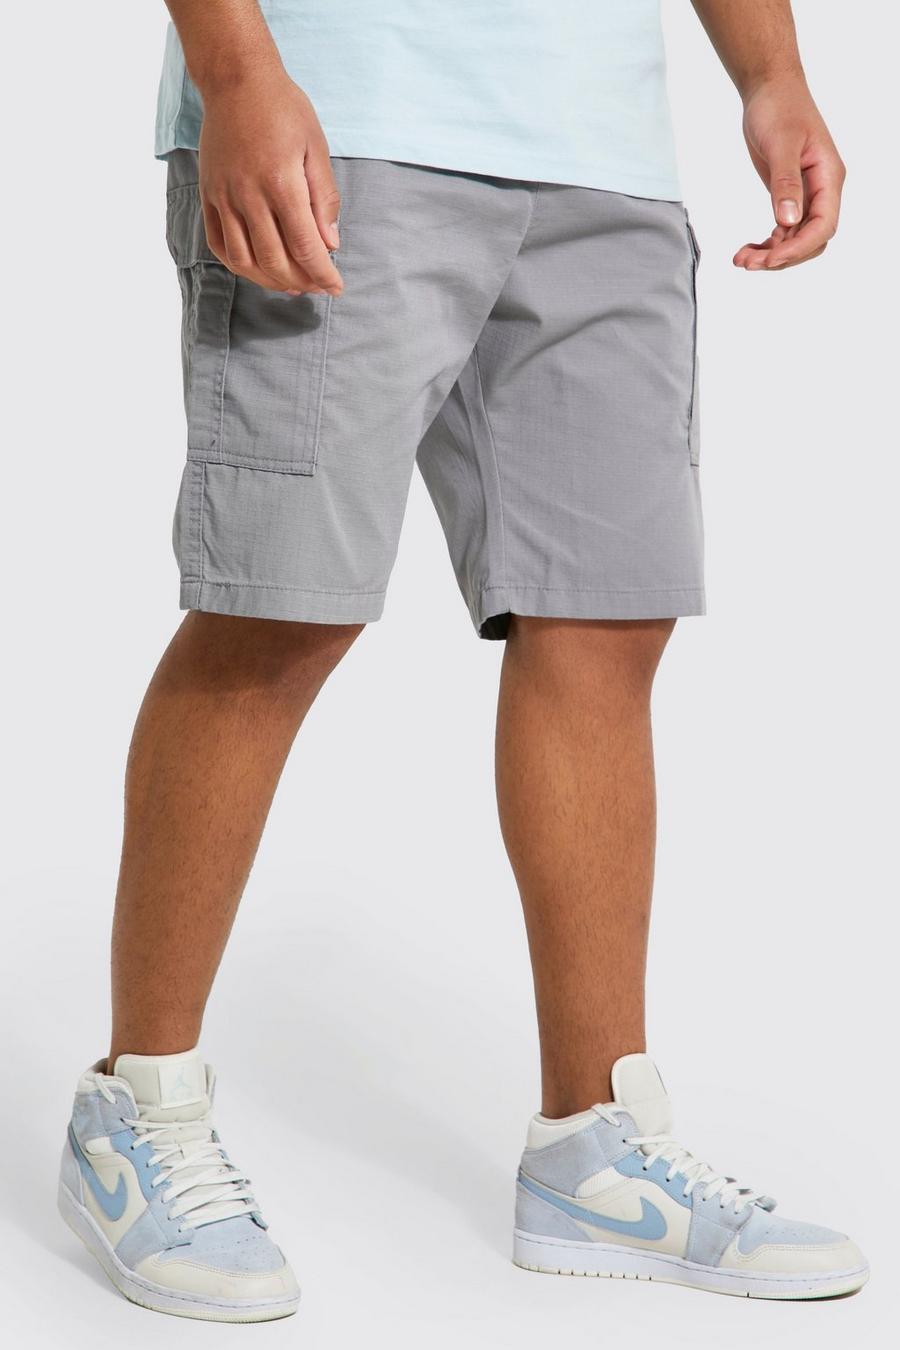 Pantalón corto Tall cargo con cintura elástica, Charcoal gris